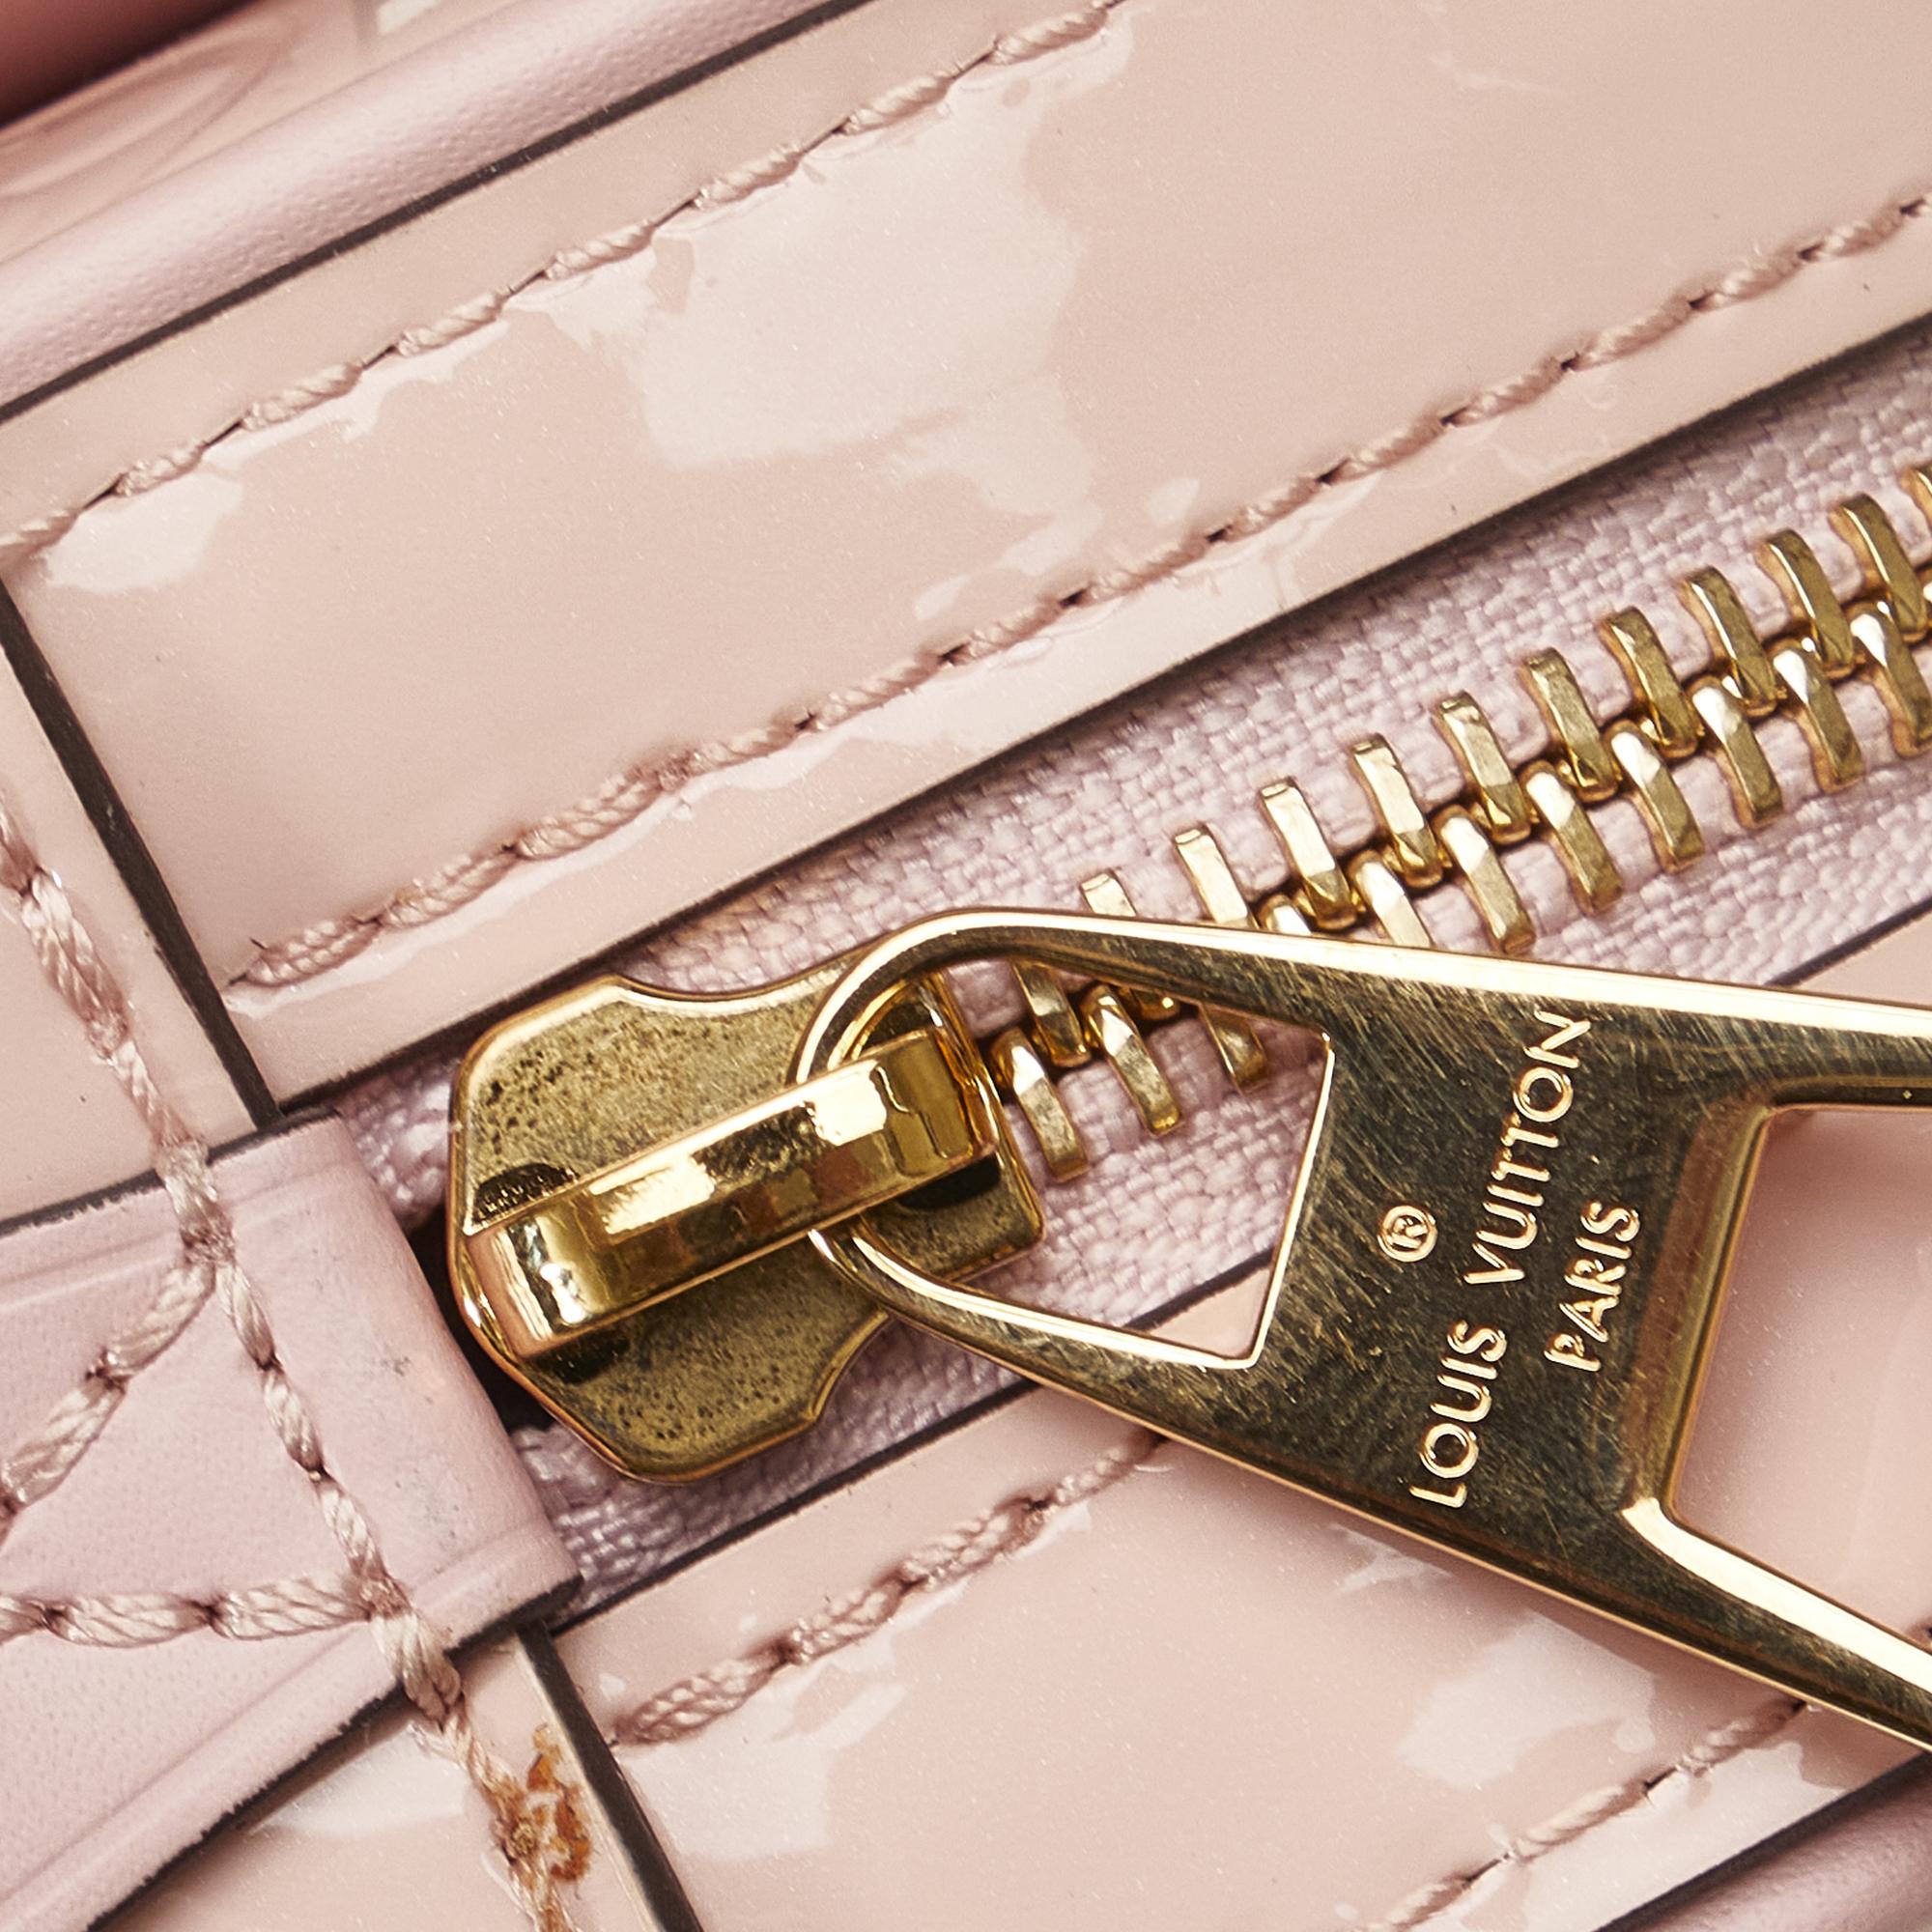 Louis Vuitton Pink Monogram Vernis Beltbag